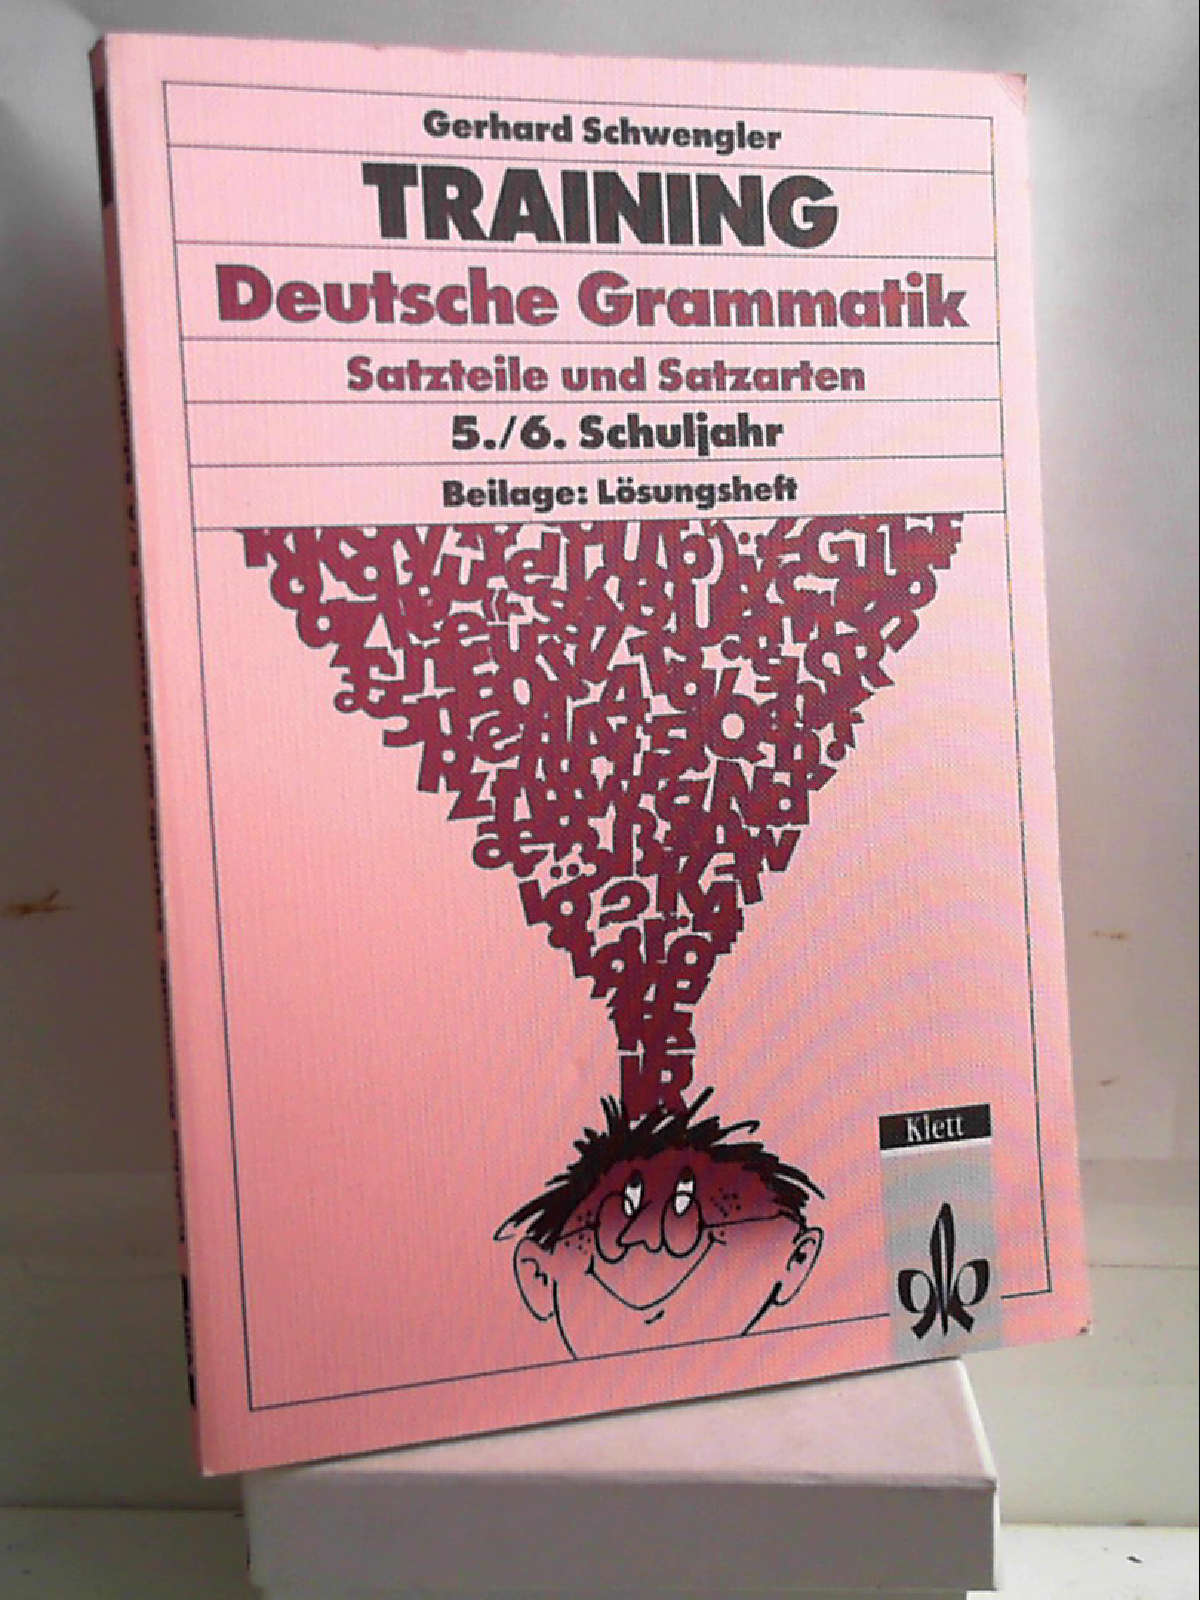 Training Deutsche Grammatik. Satzteile und Satzarten. 5./6. Schuljahr [Oct 01, 1997] Schwengler, Gerhard - Gerhard Schwengler